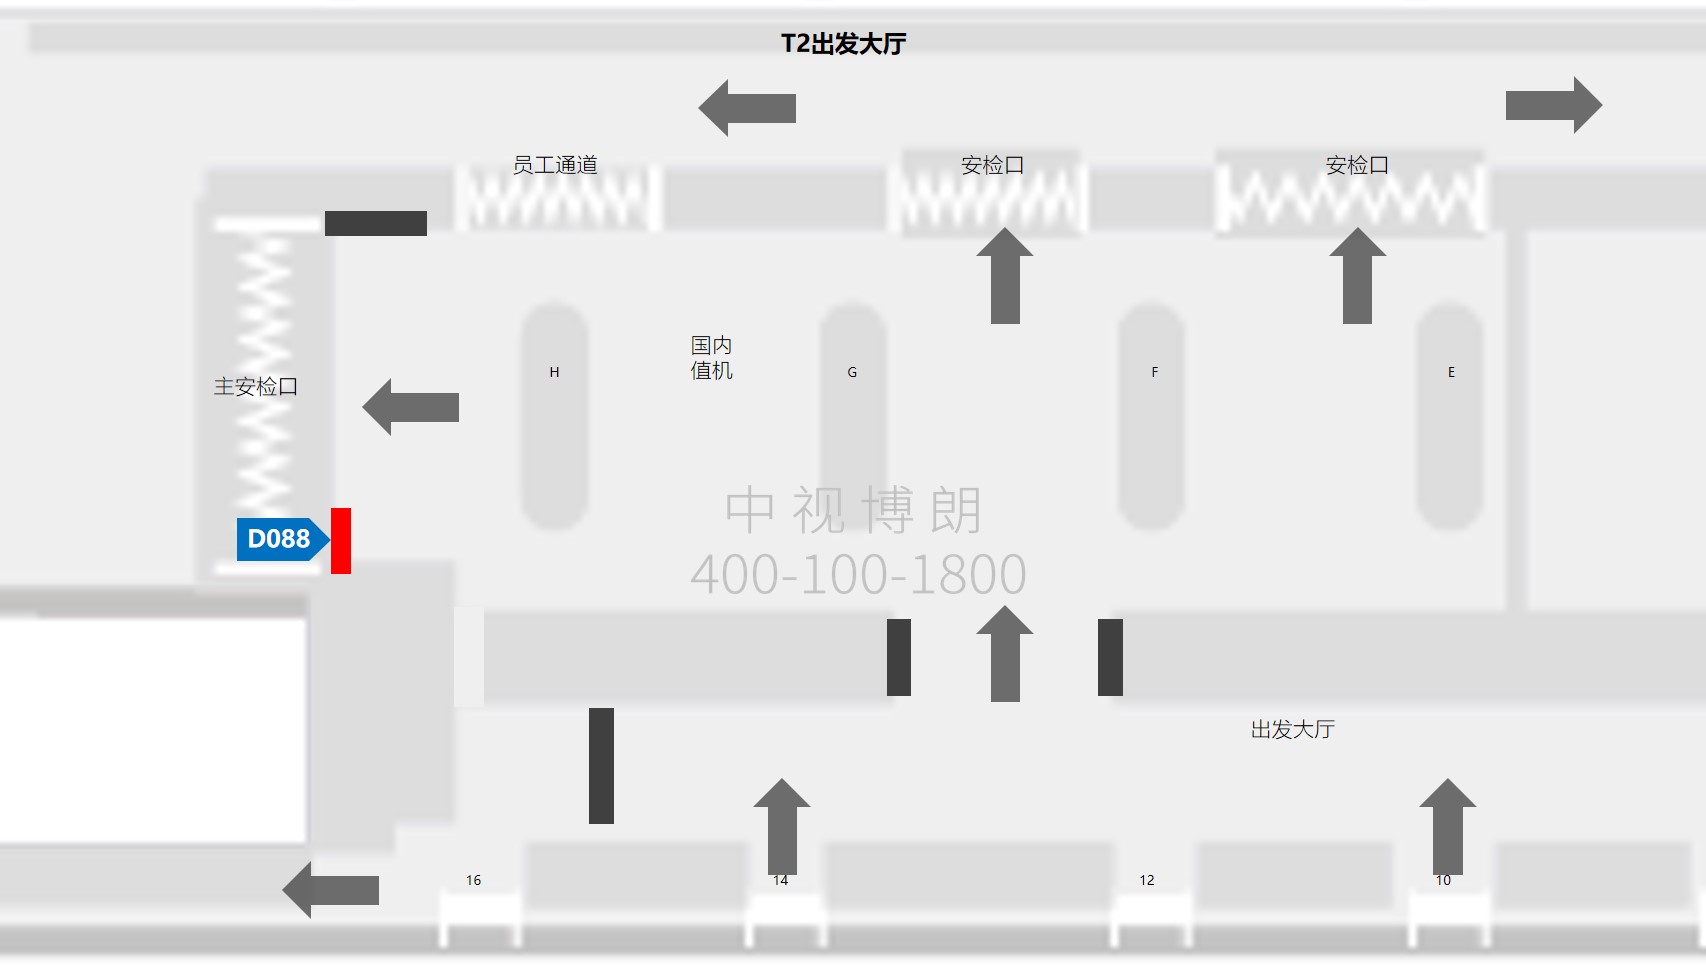 北京首都机场广告-T2国内安检口灯箱D088位置图